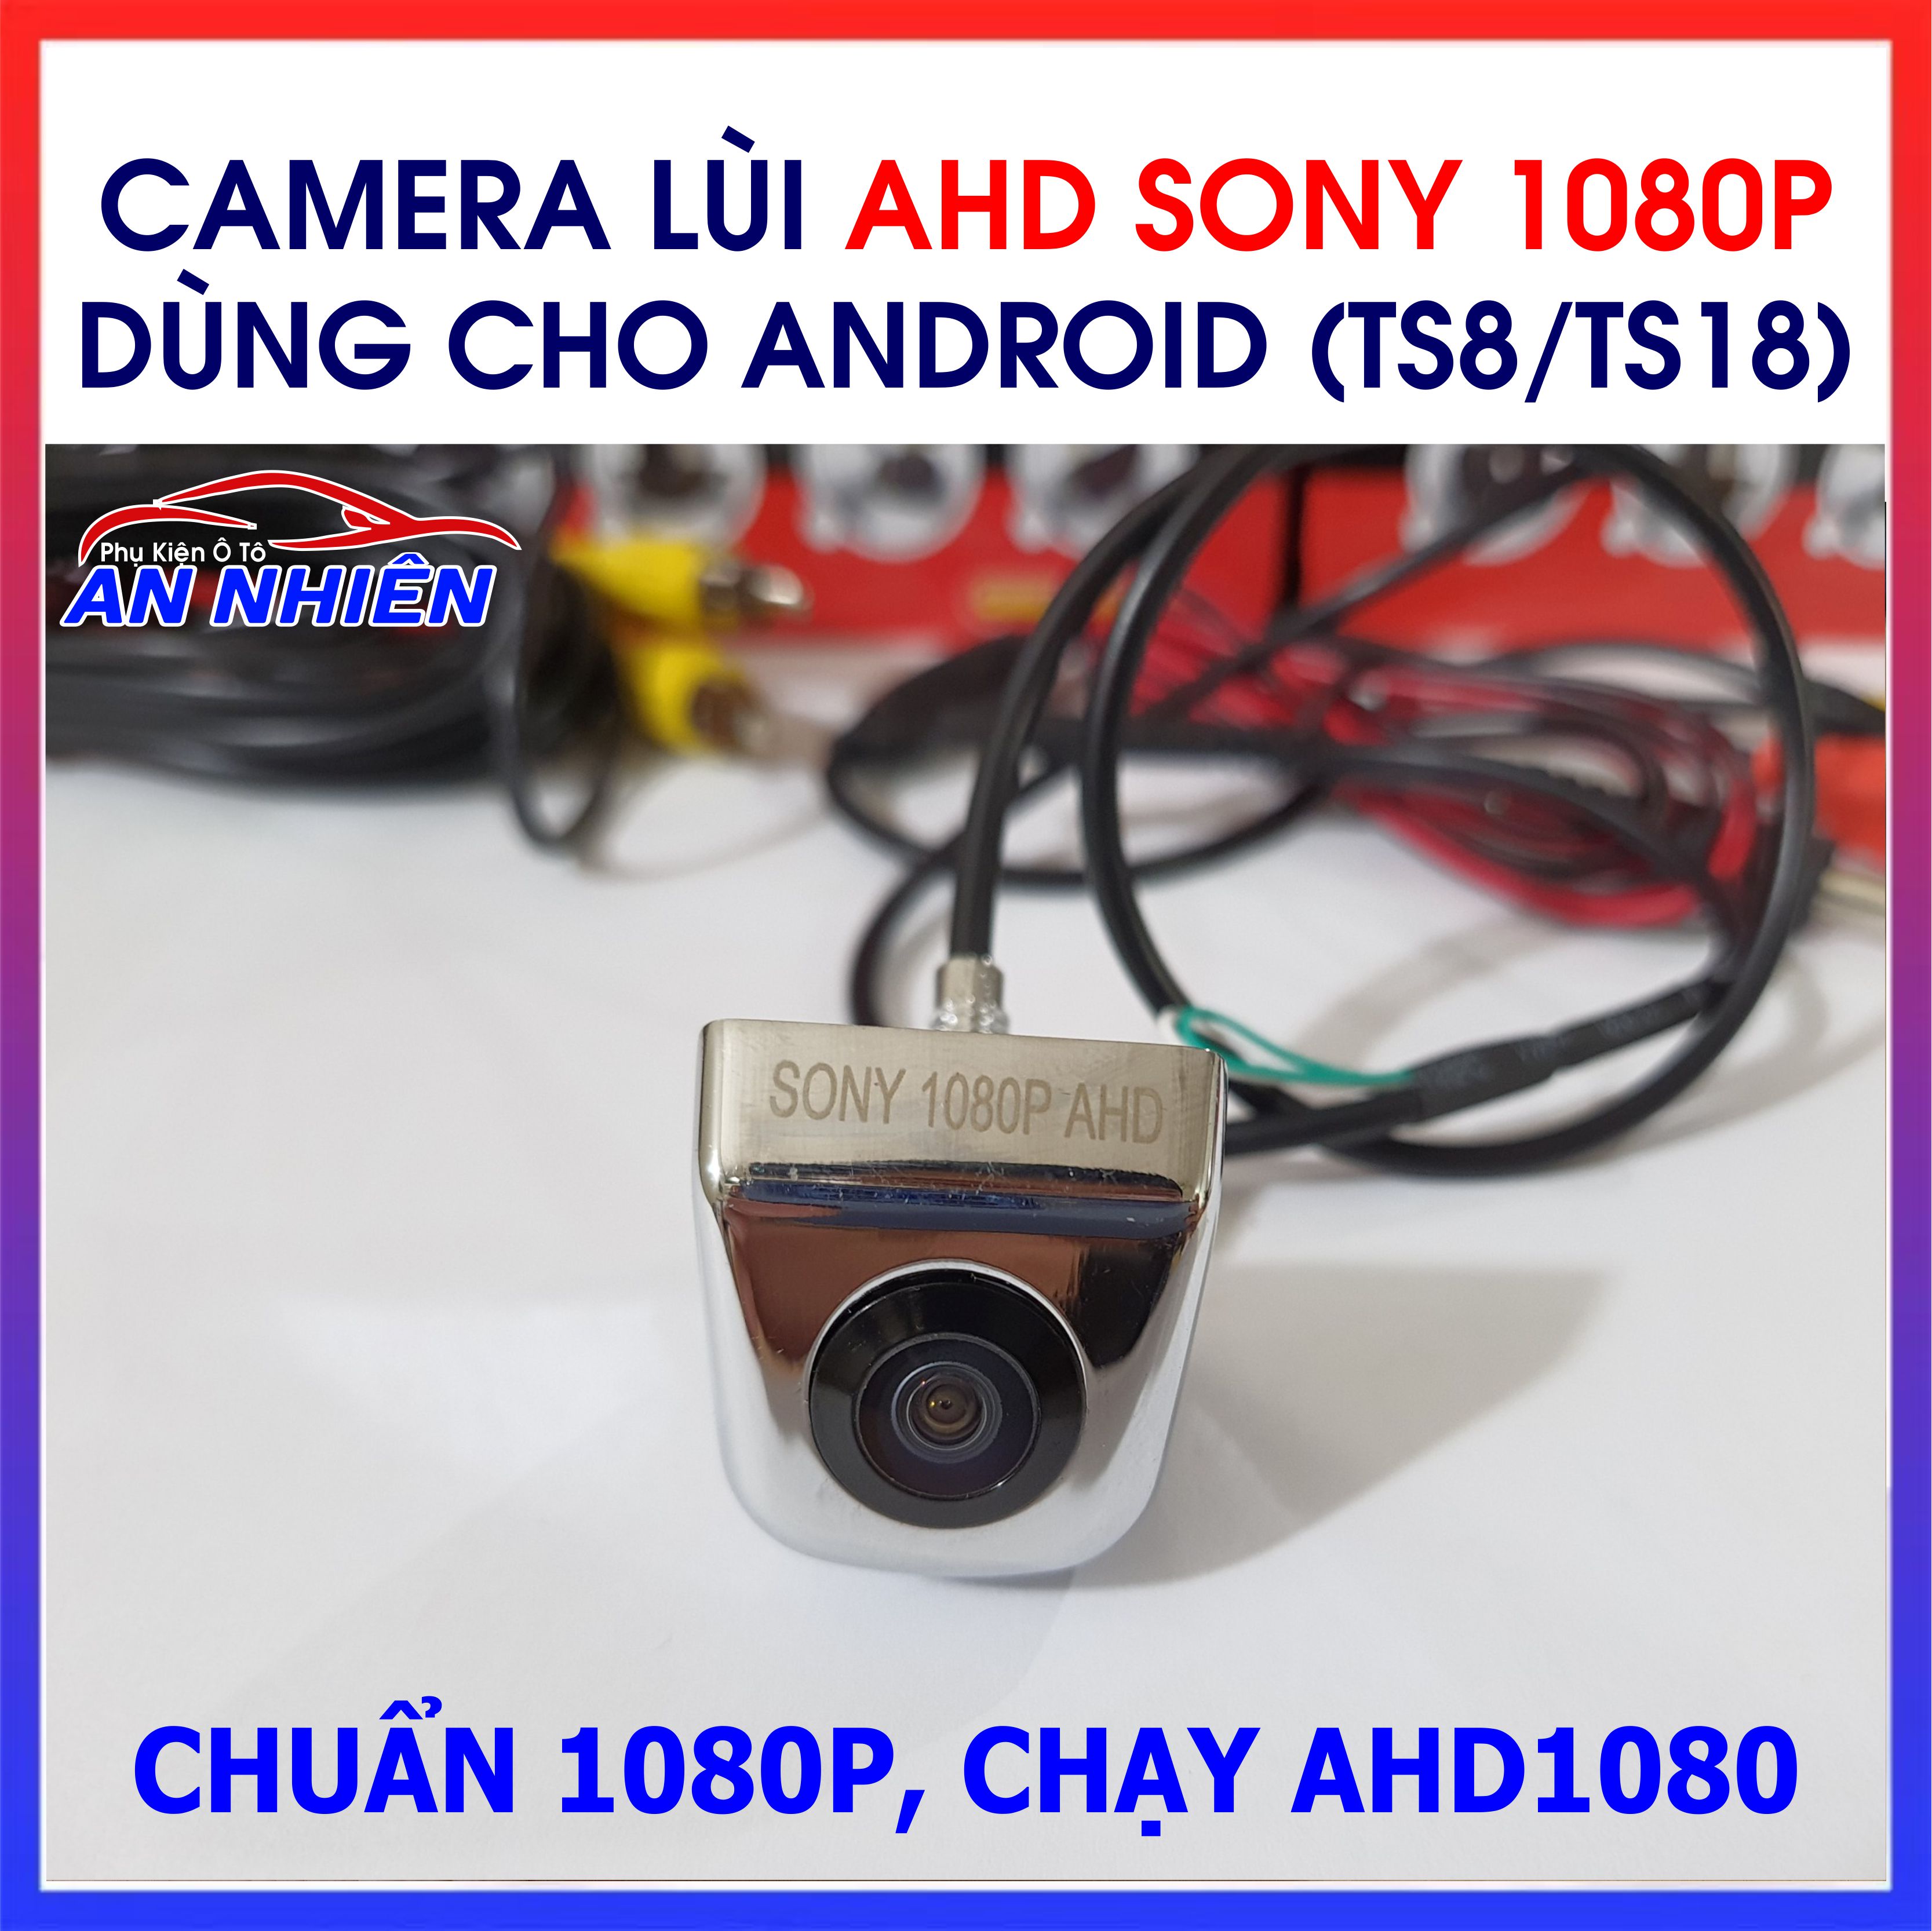 Camera Lùi AHD SONY Chạy Chuẩn 1080P/ 720P Siêu Nét, Góc Siêu Rộng 170 độ Cho Màn Hình DVD Android - Camera De Hồng Ngoại Full HD cho ô tô